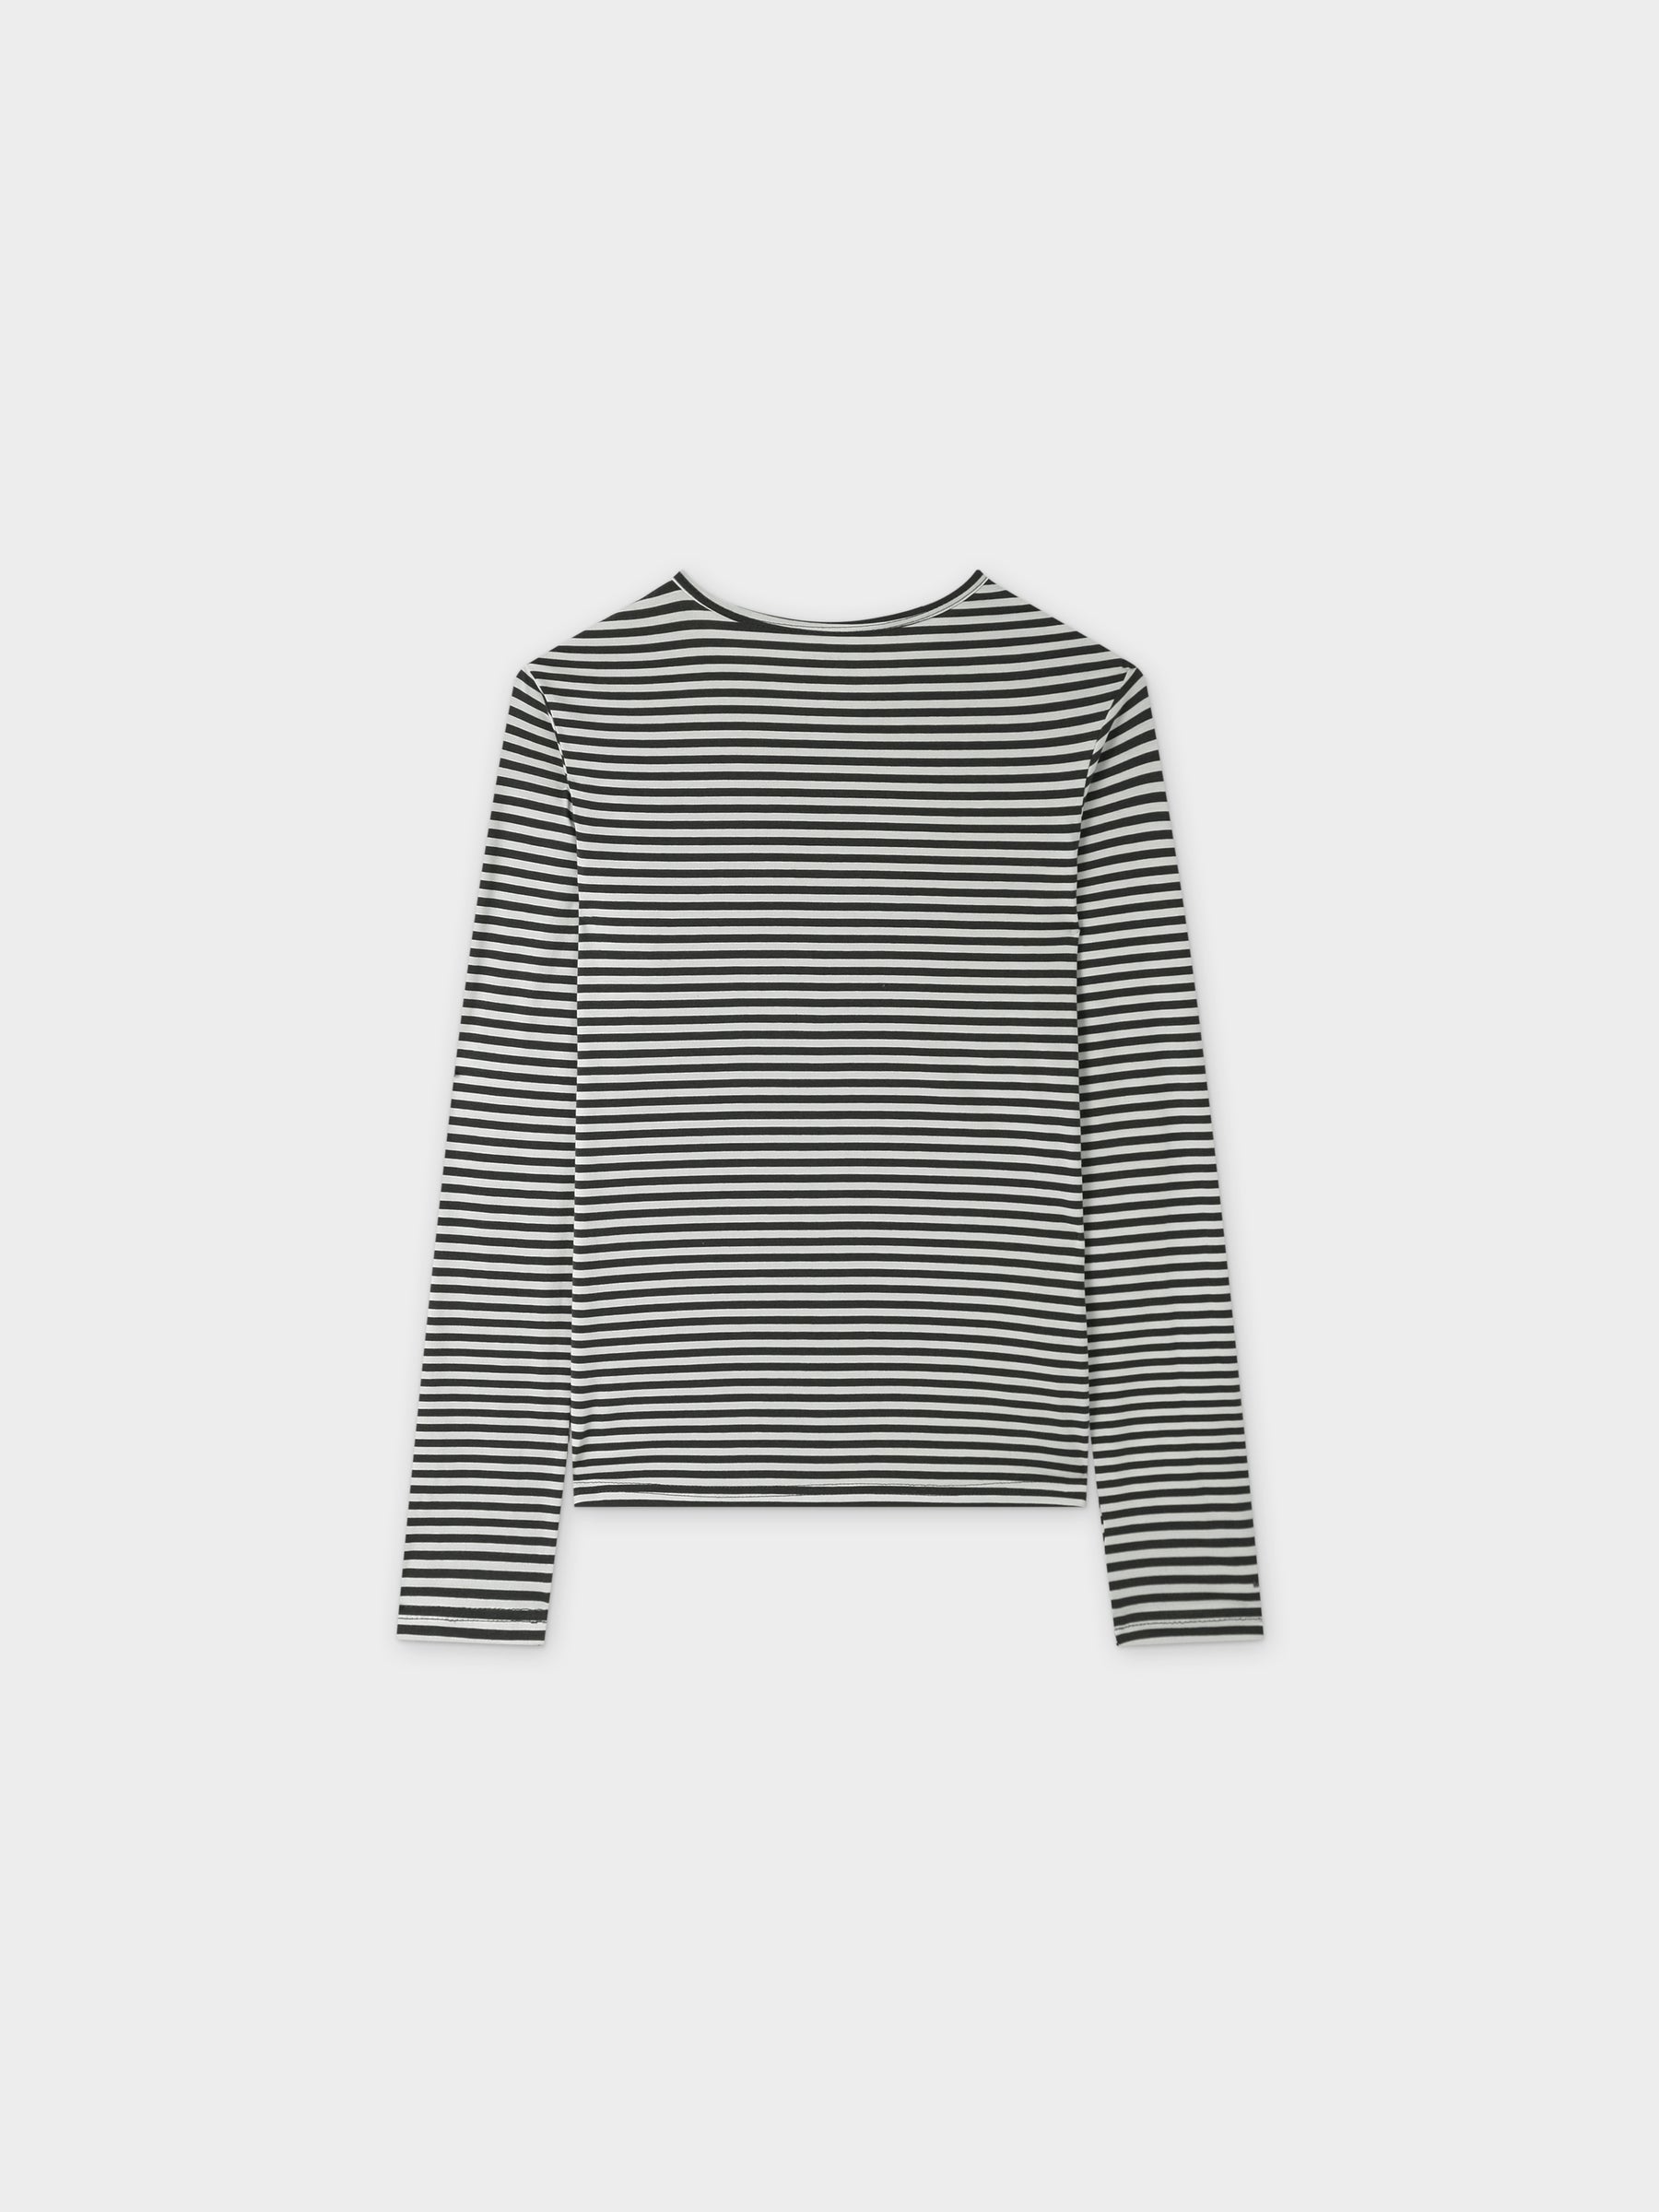 Camiseta Thin Stripe High V-Crema/Oliva